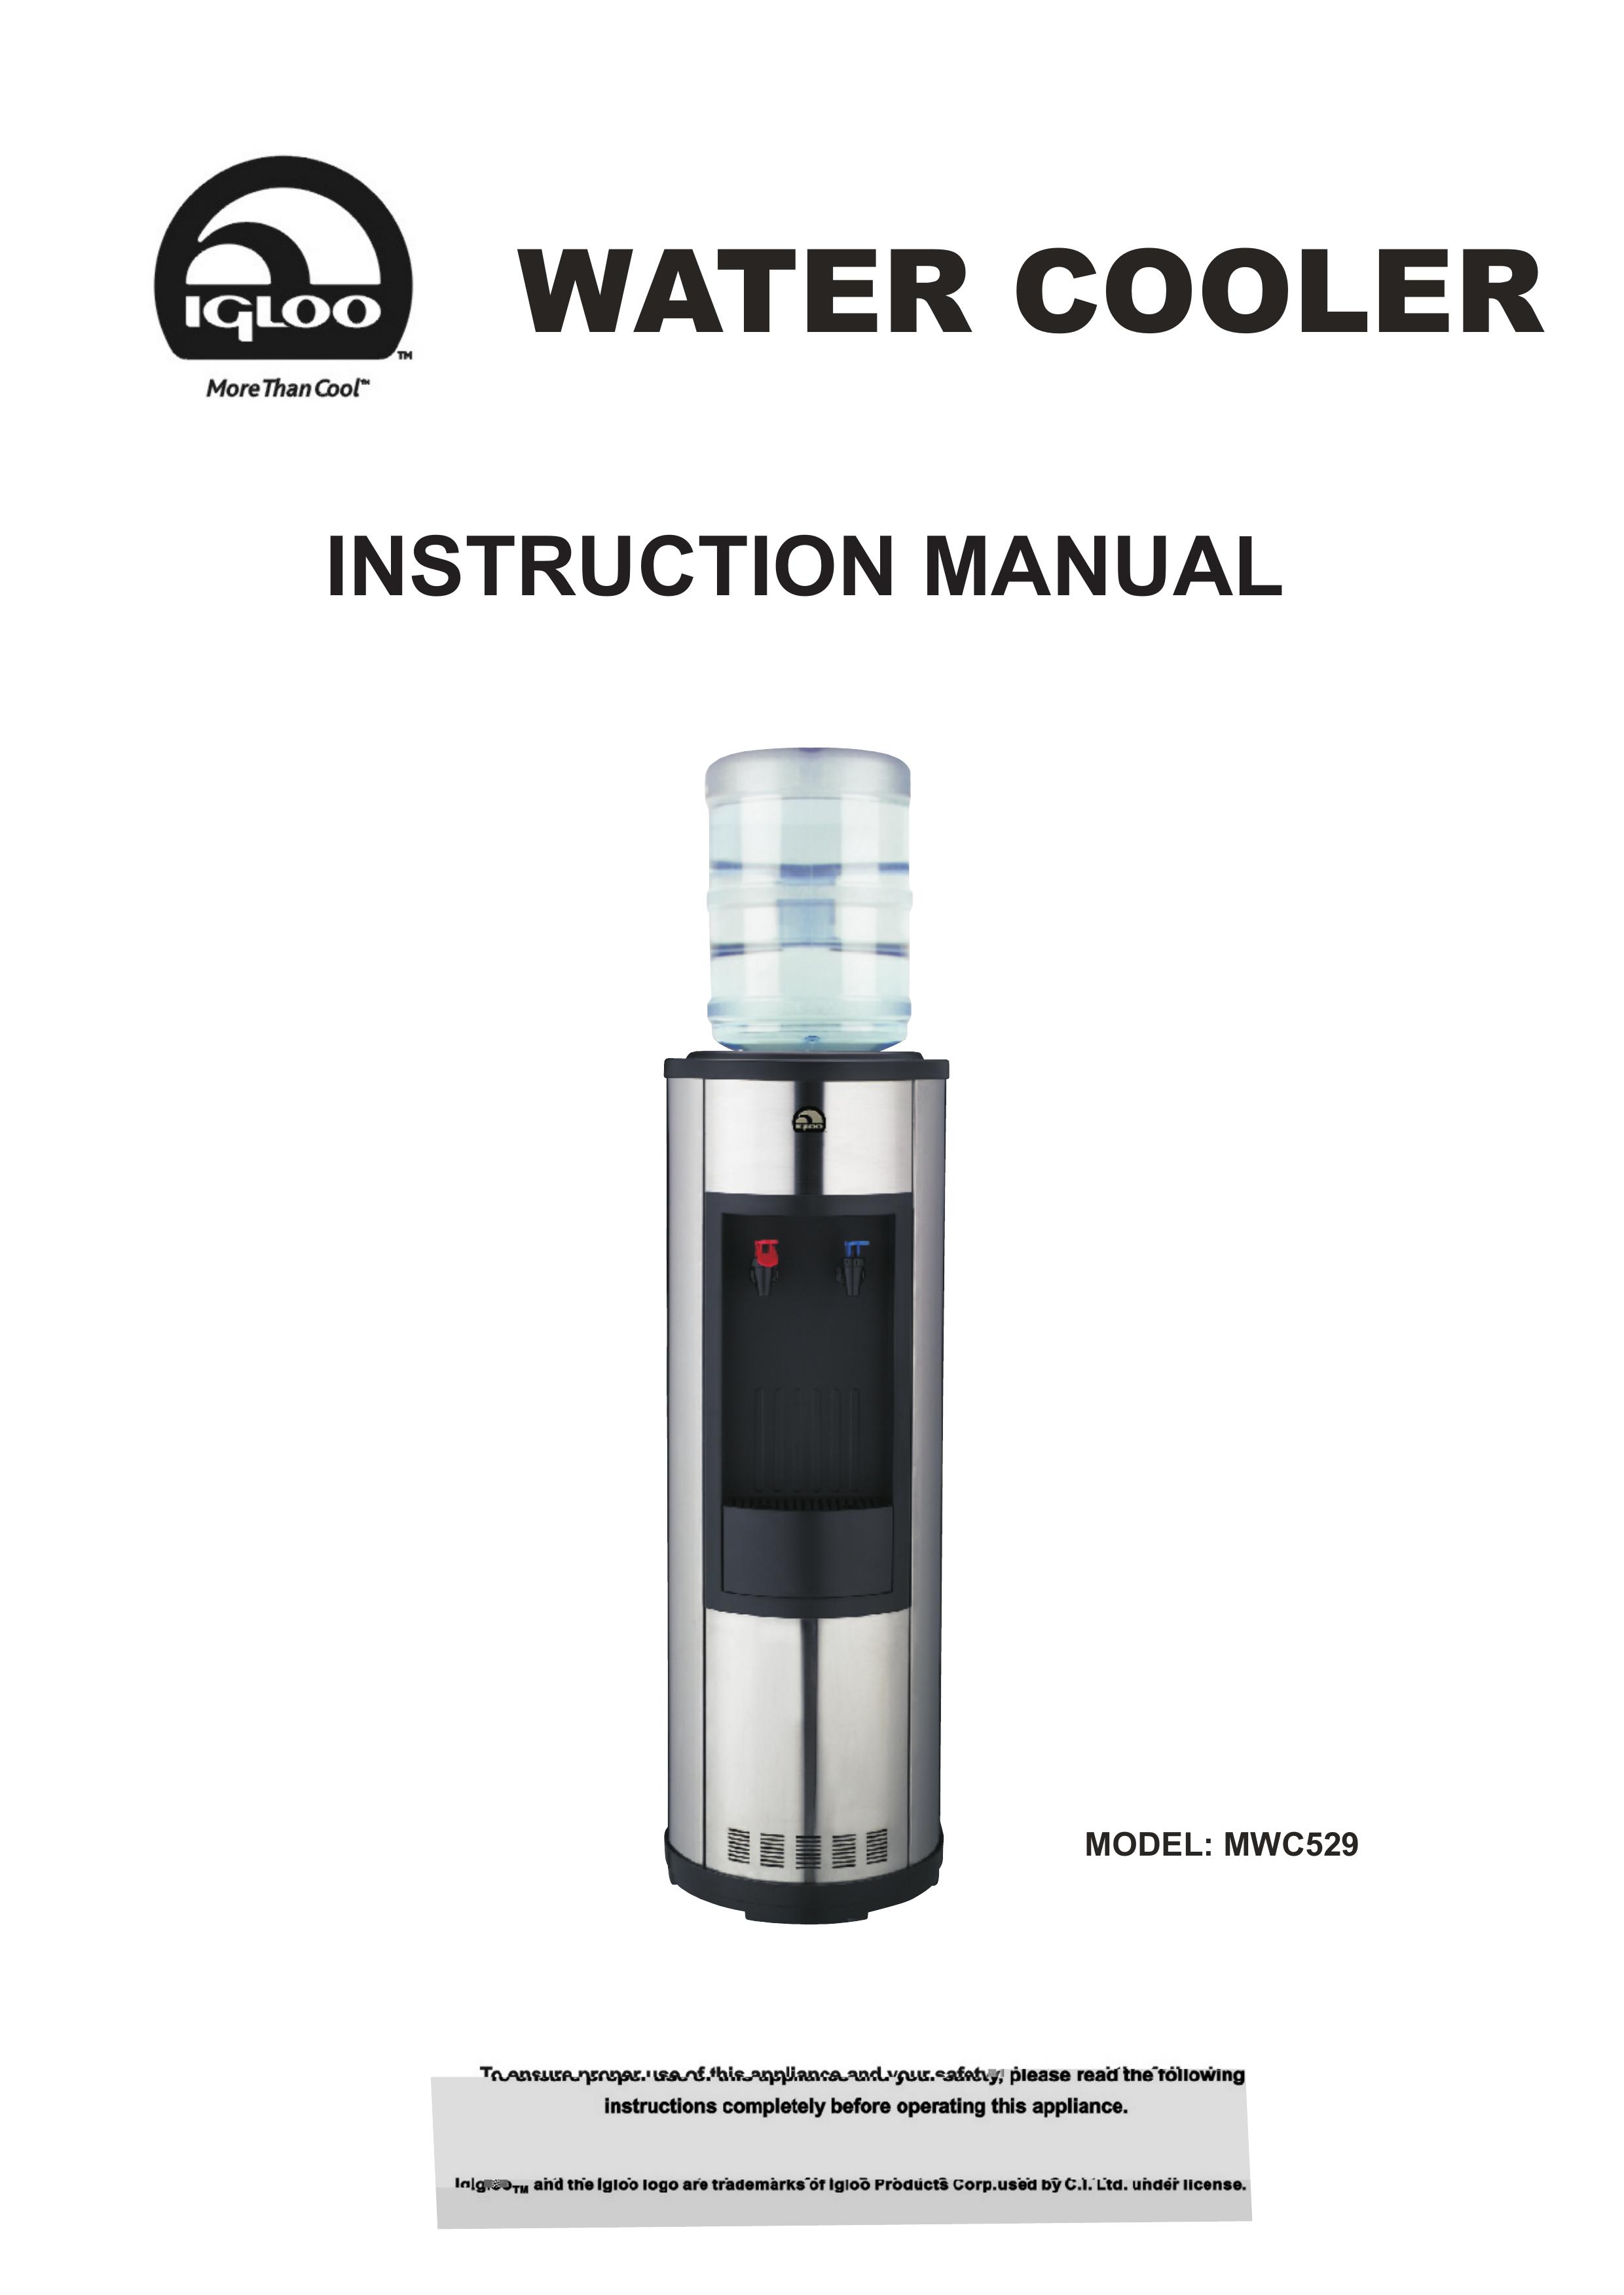 Igloo MWC529 Water Dispenser User Manual